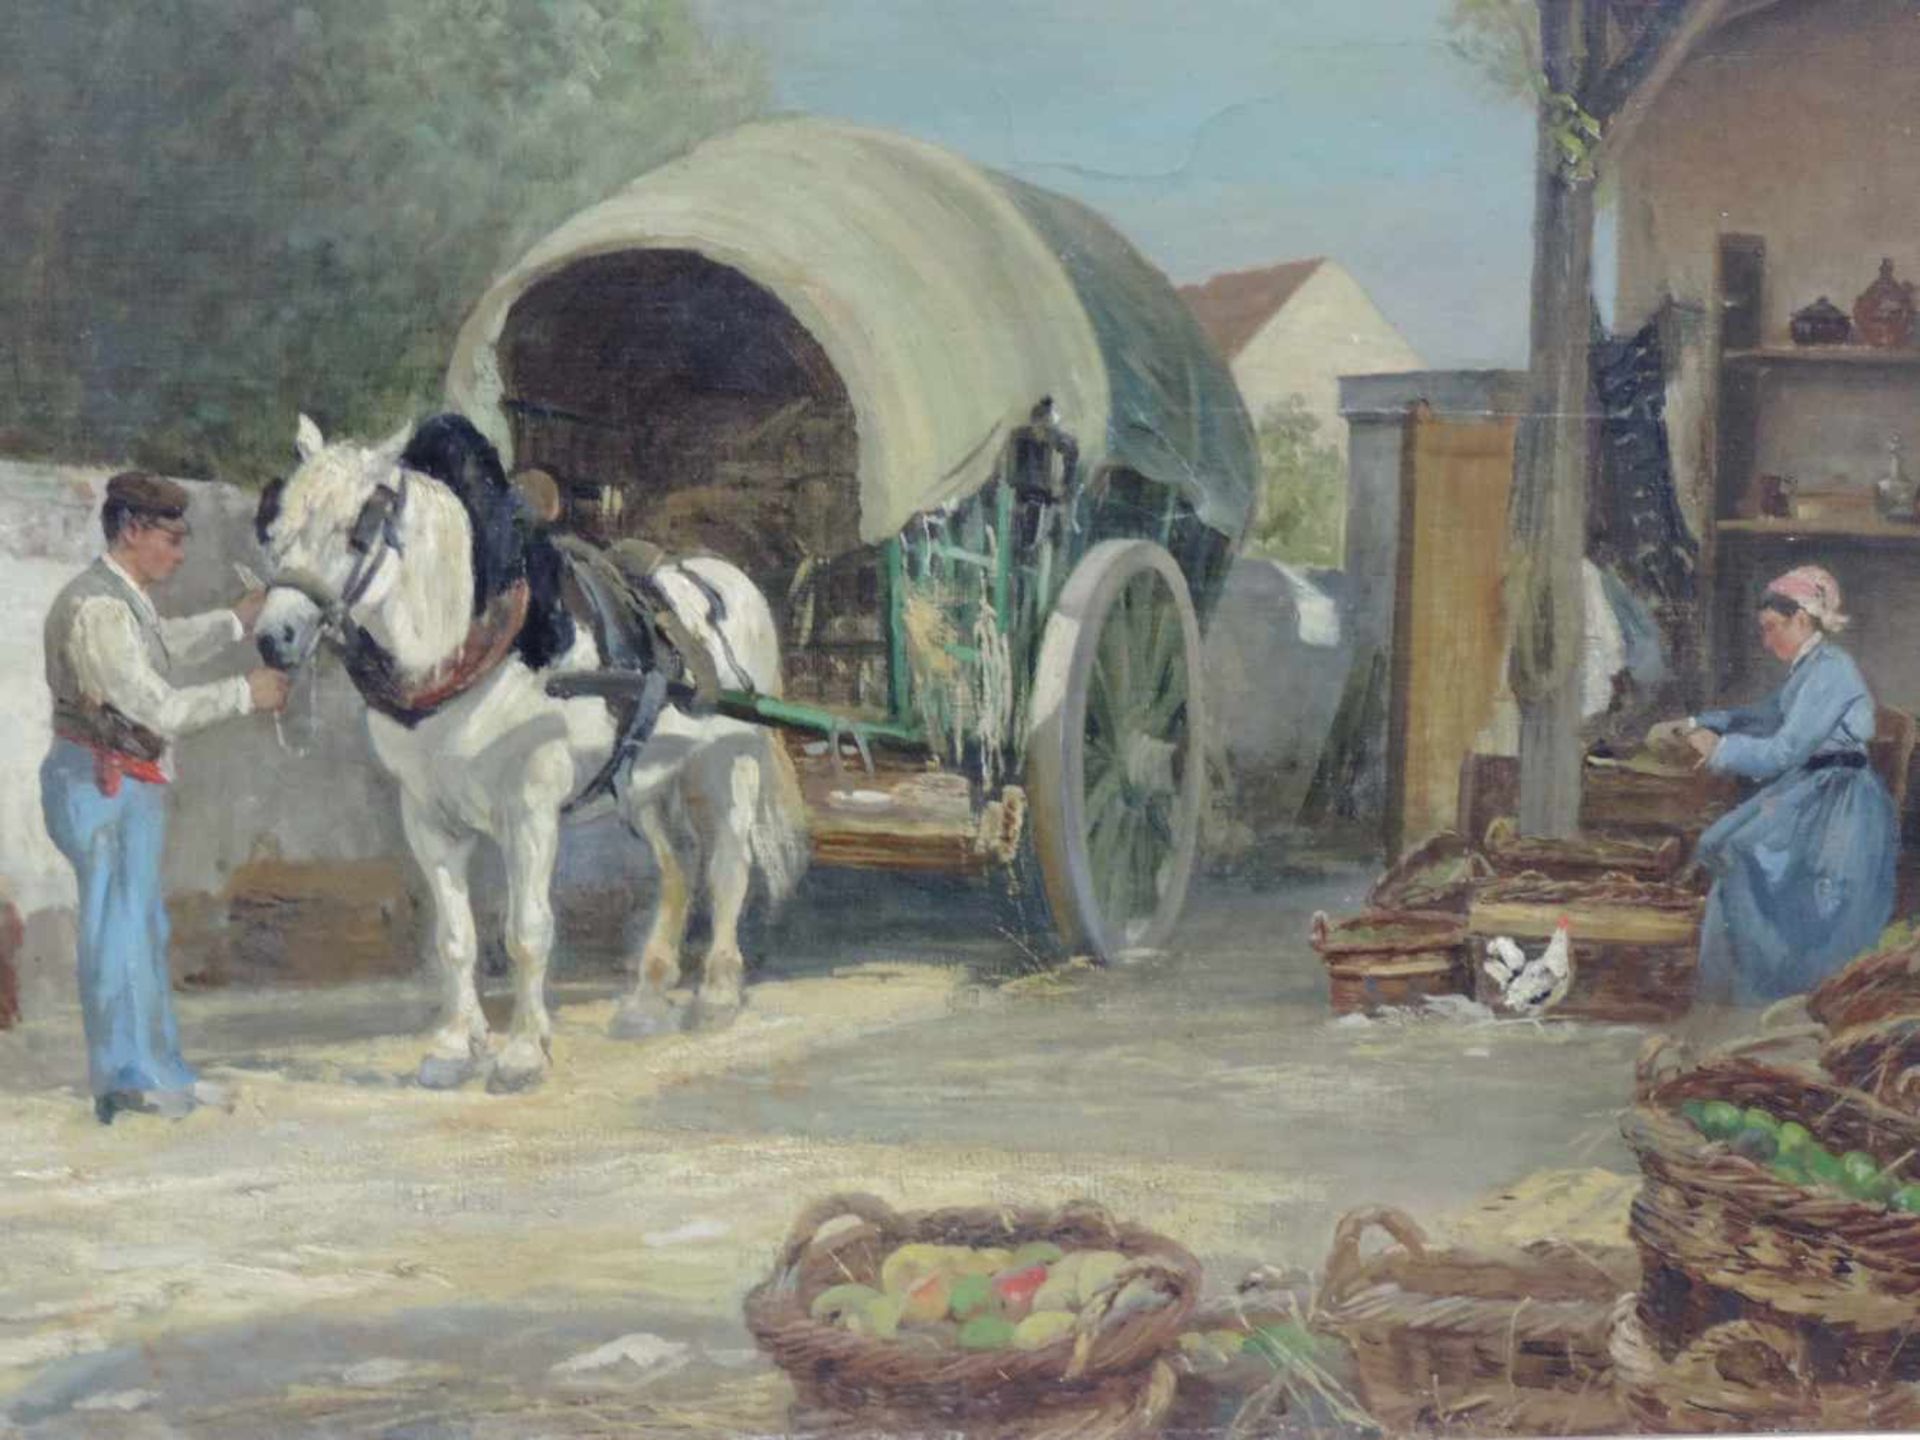 August VOIGT-FÖLGER (1836 - 1918). Einbringen der Ernte. 71 cm x 101 cm. Gemälde. Öl auf Leinwand.